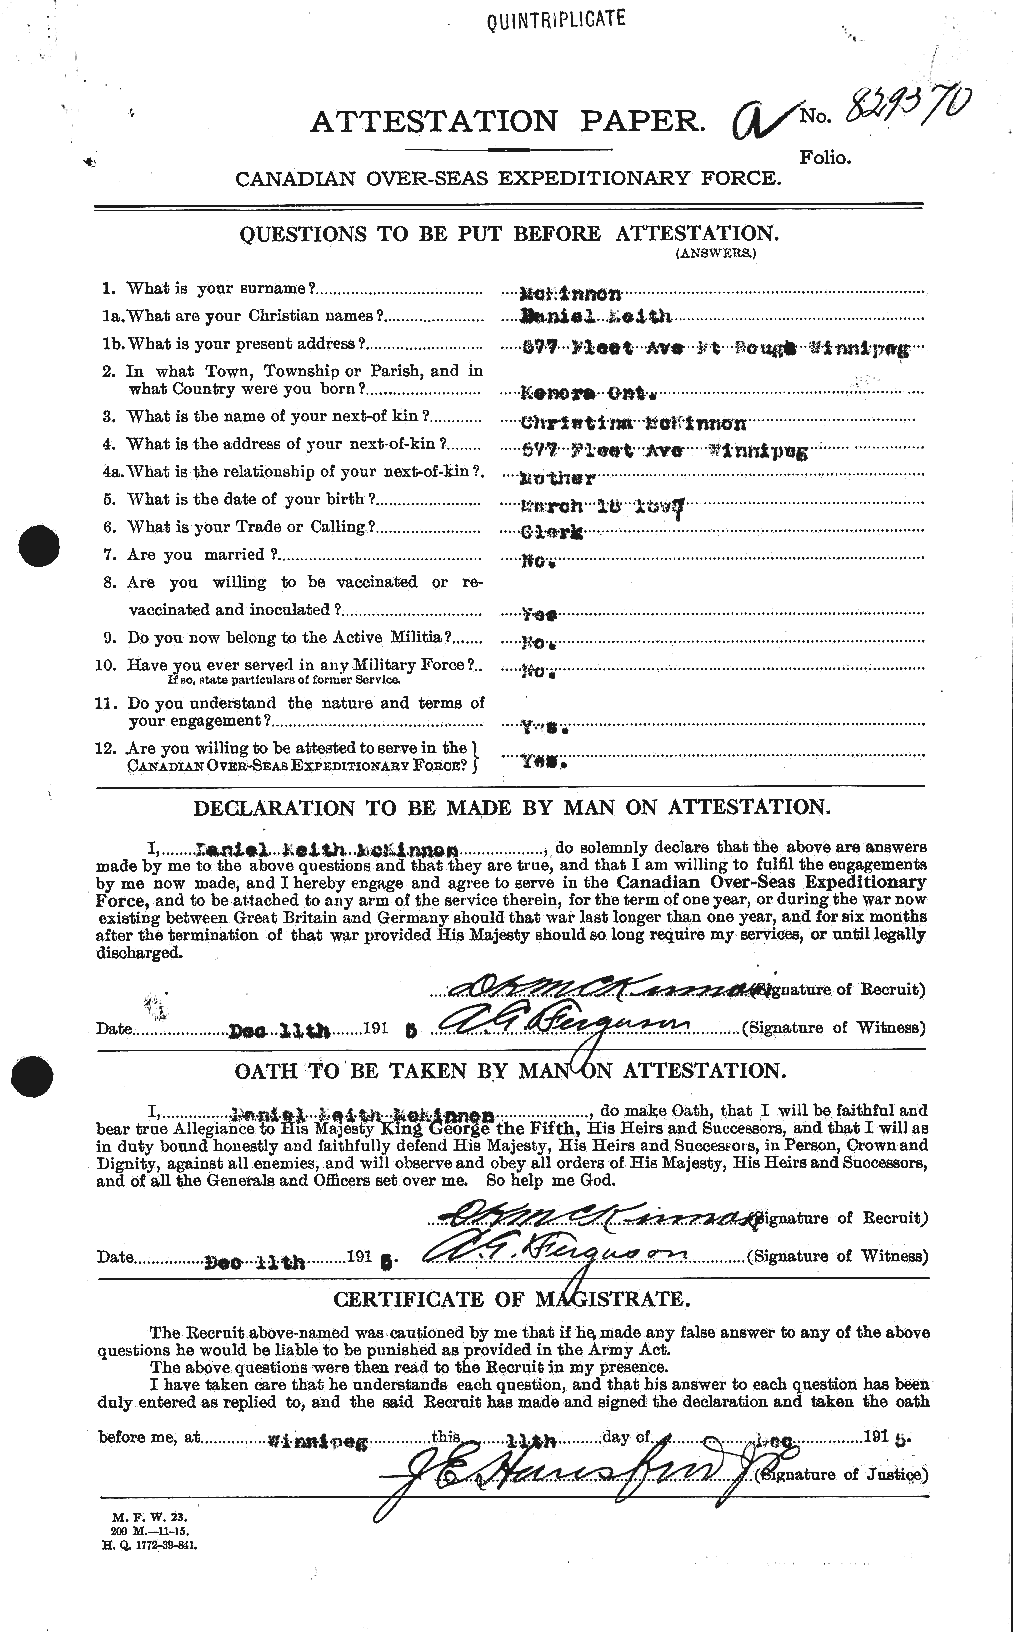 Dossiers du Personnel de la Première Guerre mondiale - CEC 531336a